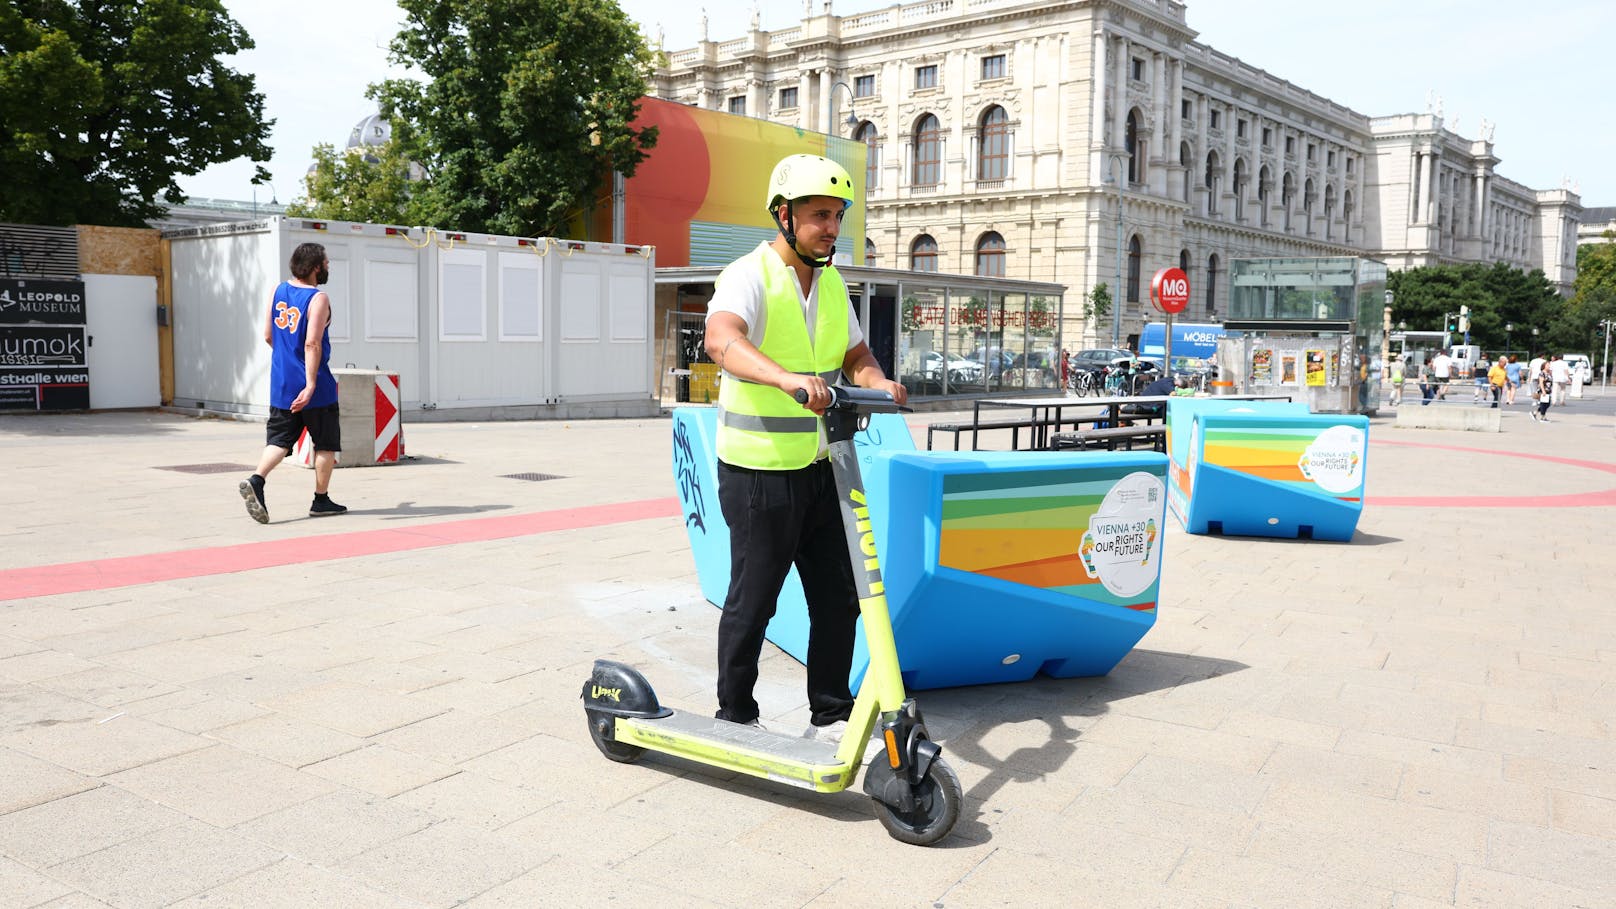 Anbieter Link parkt falsch abgestellte E-Scooter in Wien für 5 Euro um.